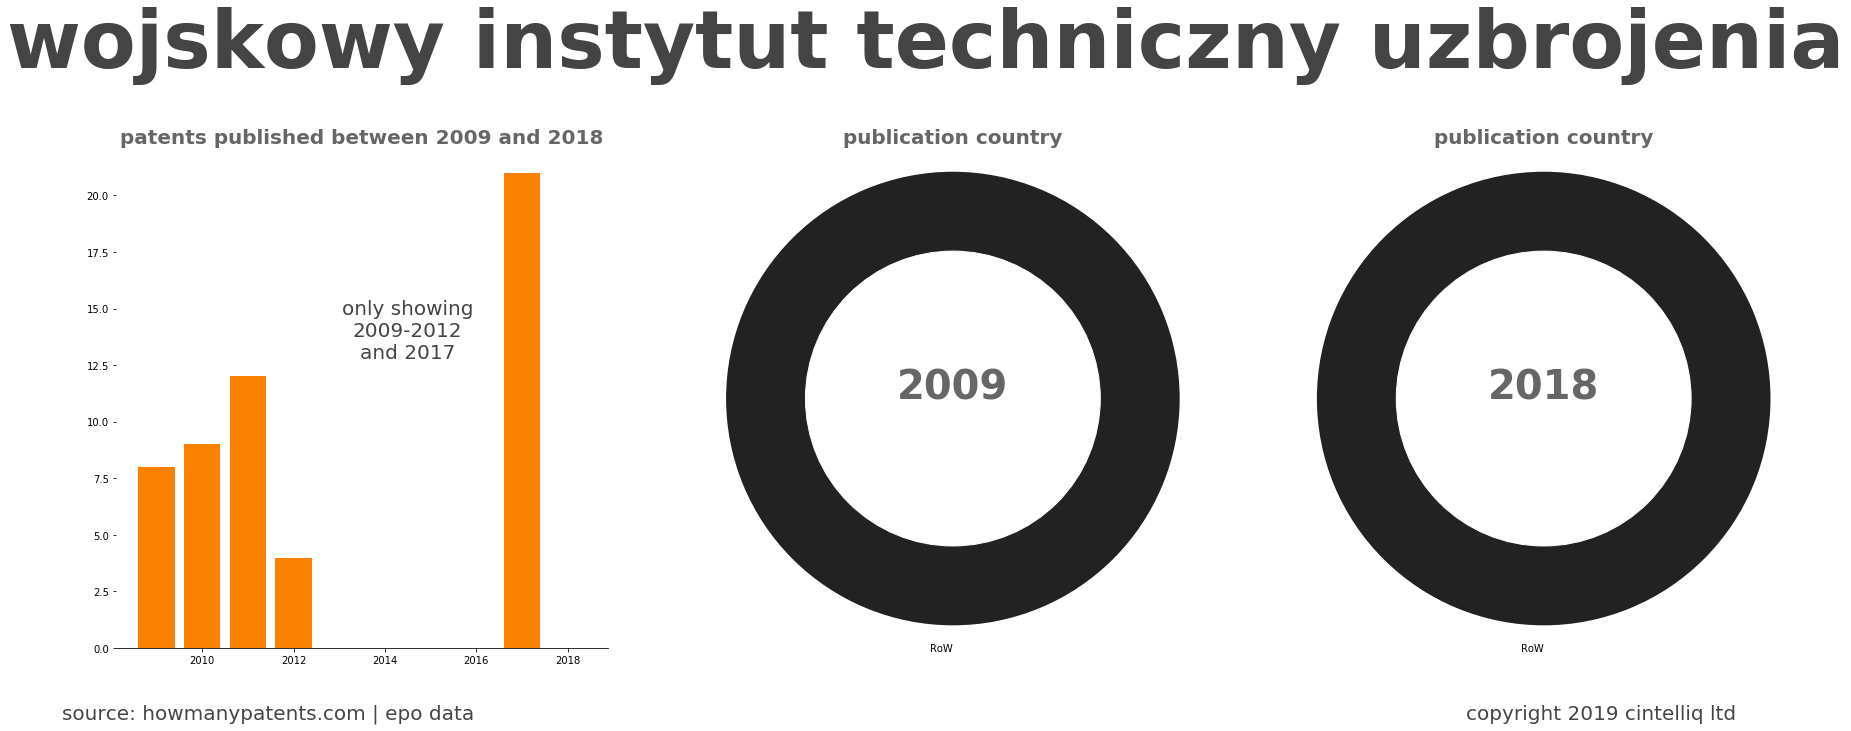 summary of patents for Wojskowy Instytut Techniczny Uzbrojenia